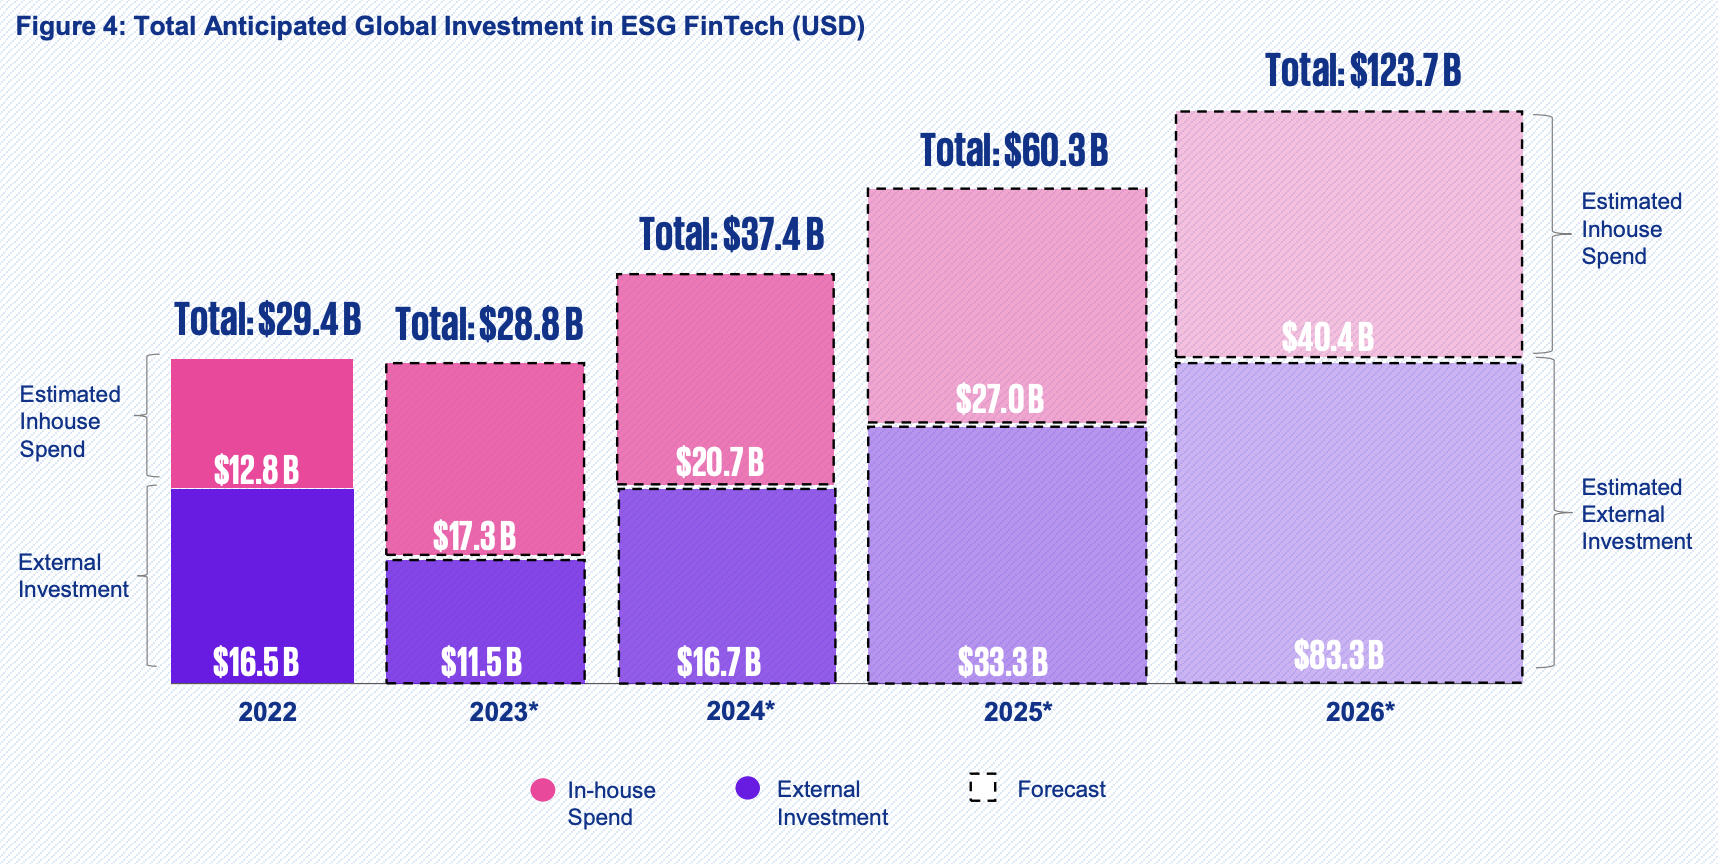 Inversión global total prevista en fintech ESG (USD)